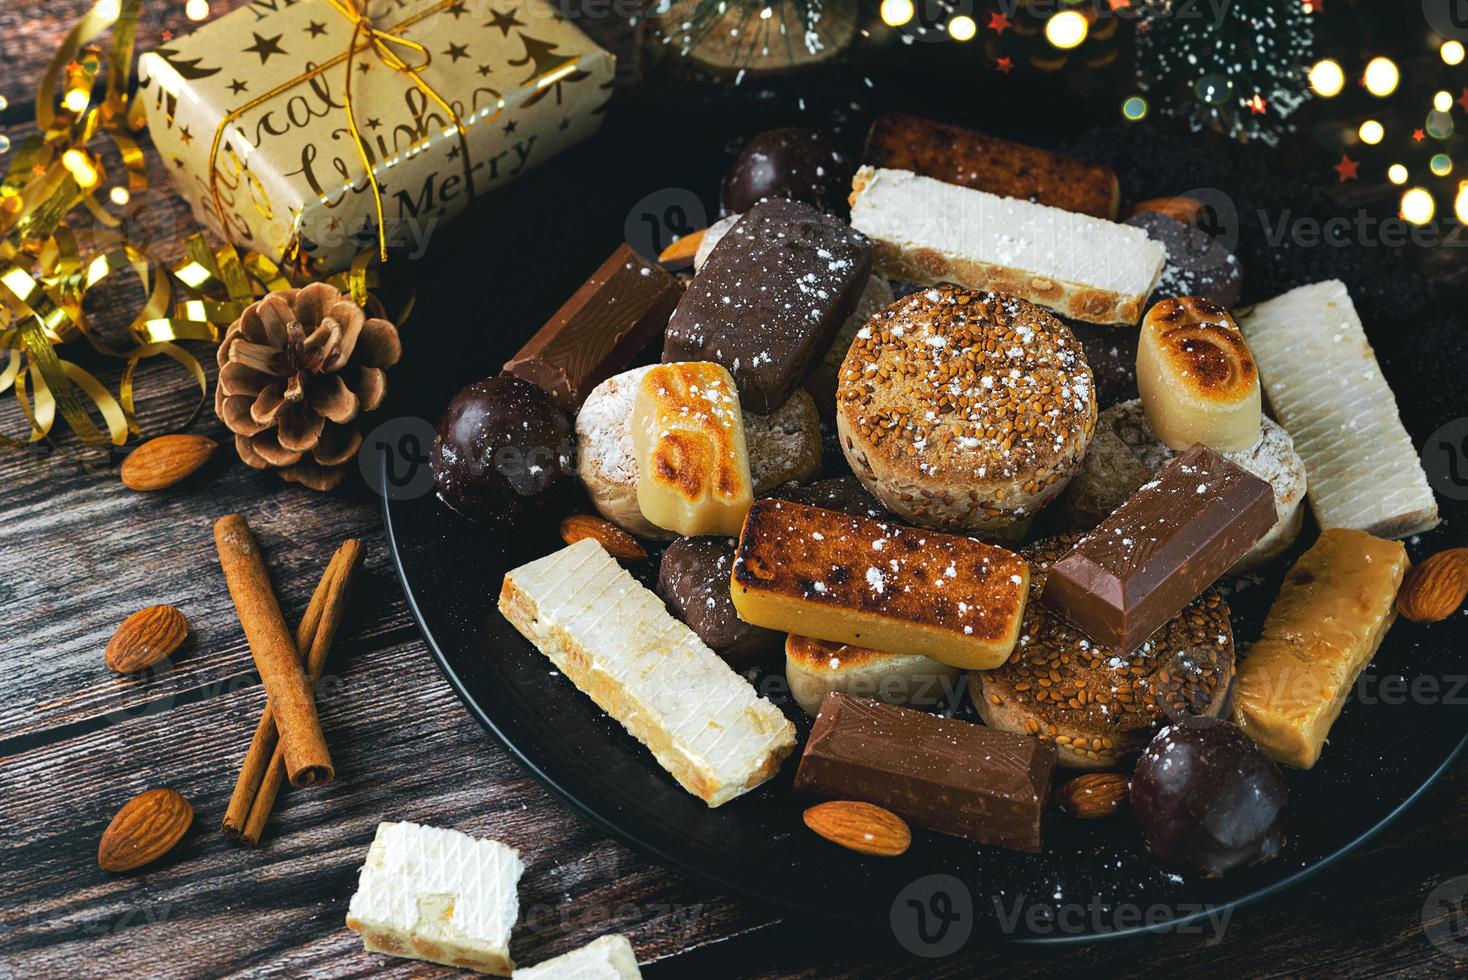 torrone dolce natalizio,mantecados e polvorones con addobbi natalizi. assortimento di dolci natalizi tipici in spagna foto